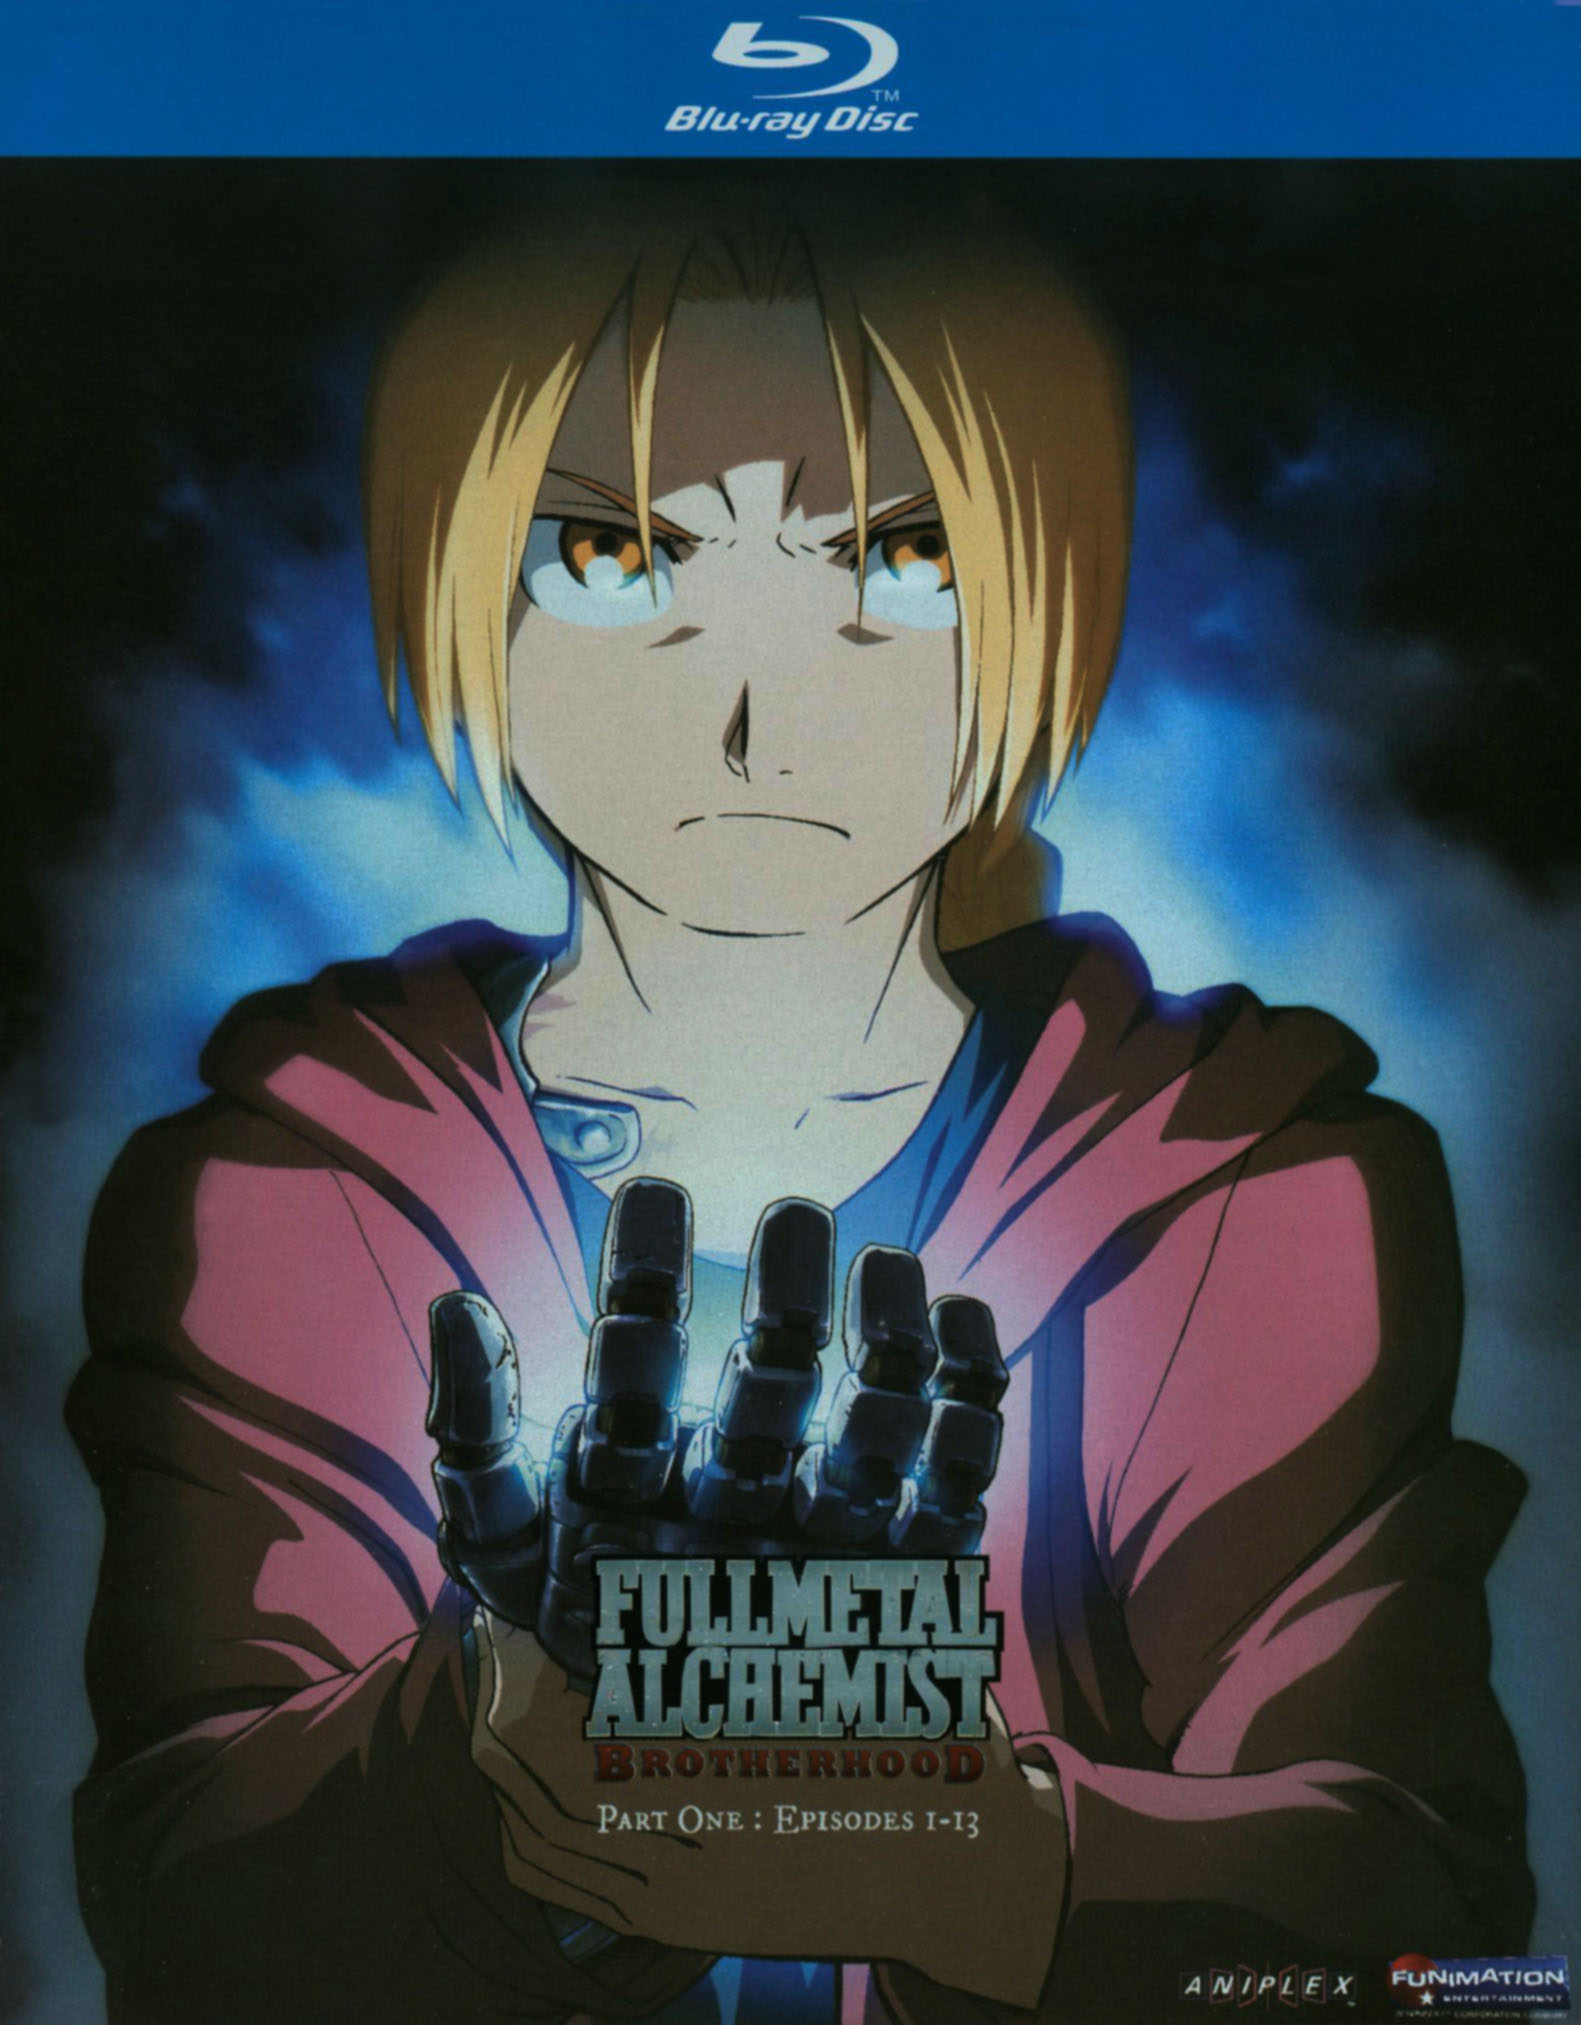 Fullmetal Alchemist Brotherhood Series collection Manga Animee